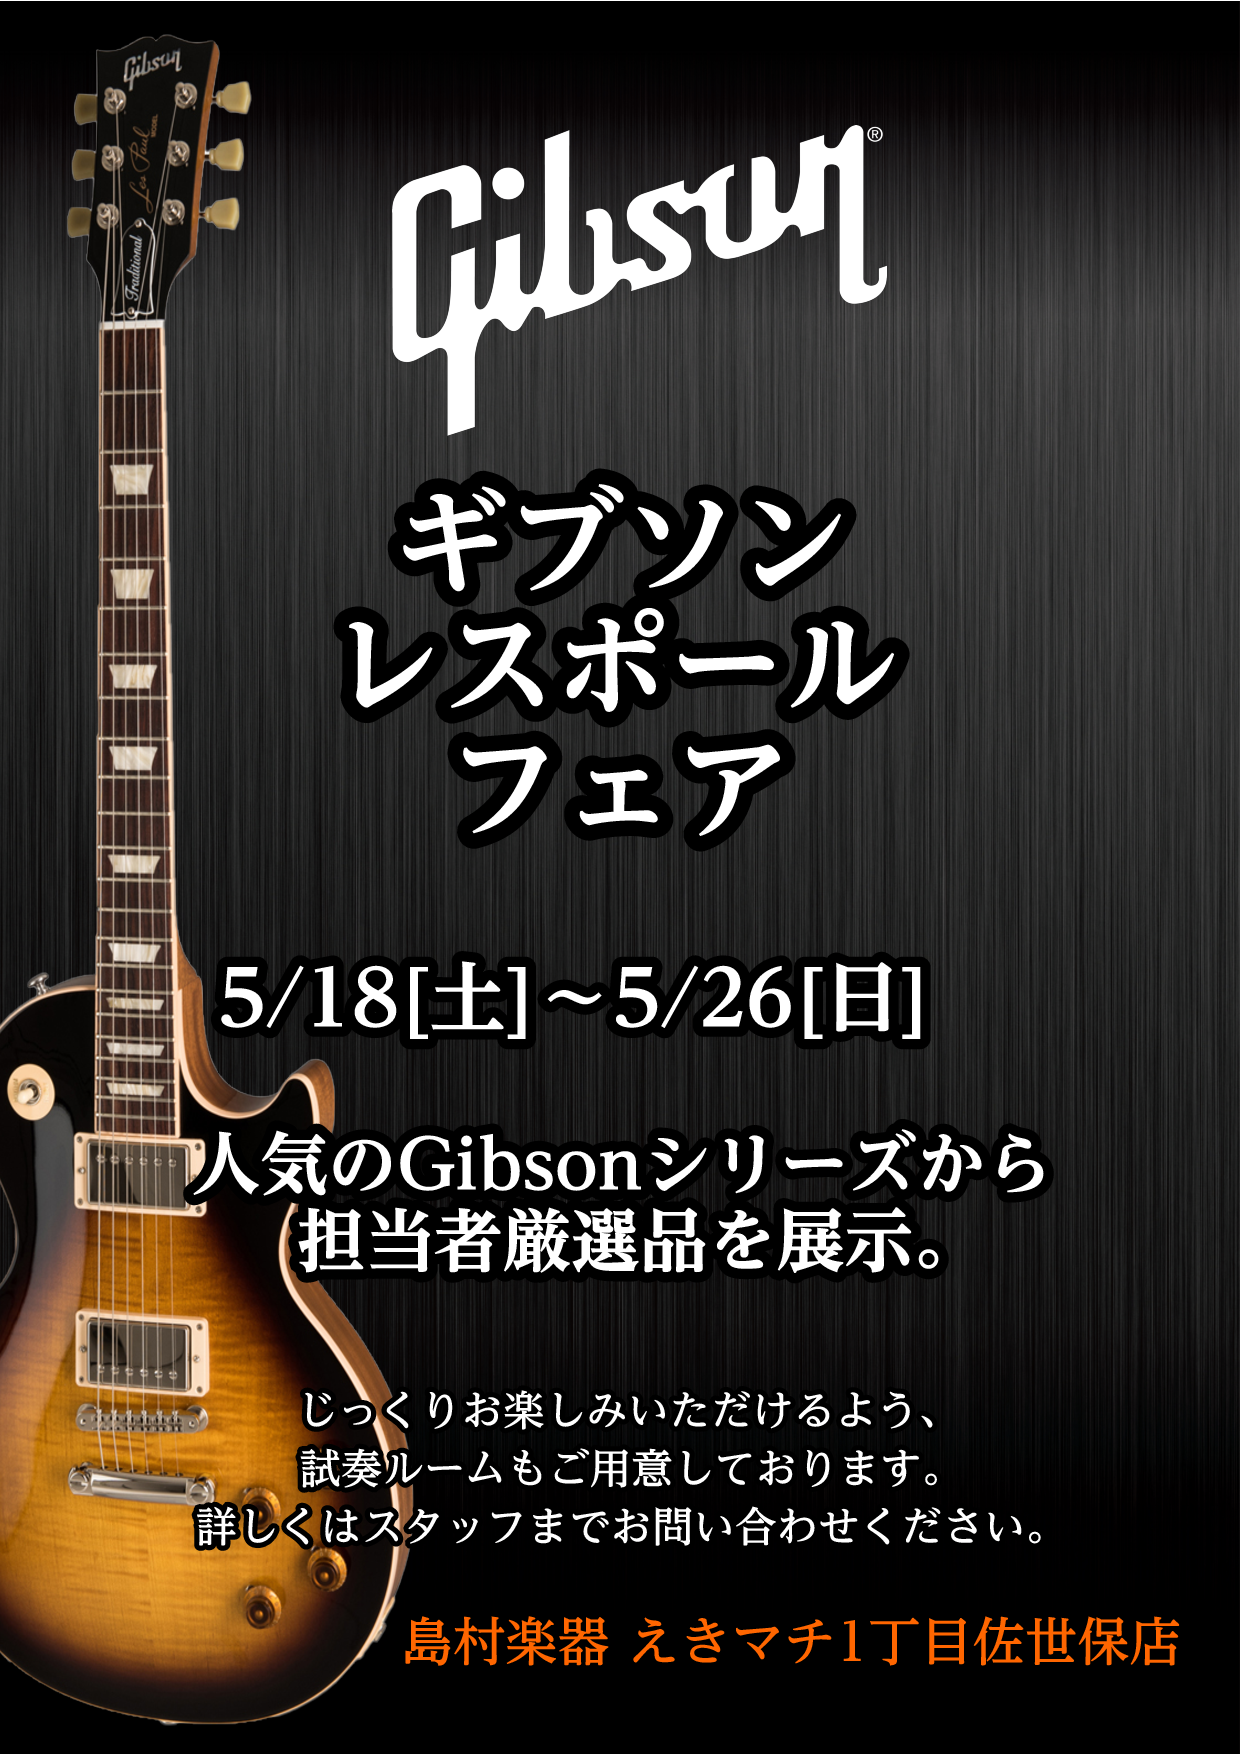 【エレキギター】Gibsonレスポールフェア 開催します!